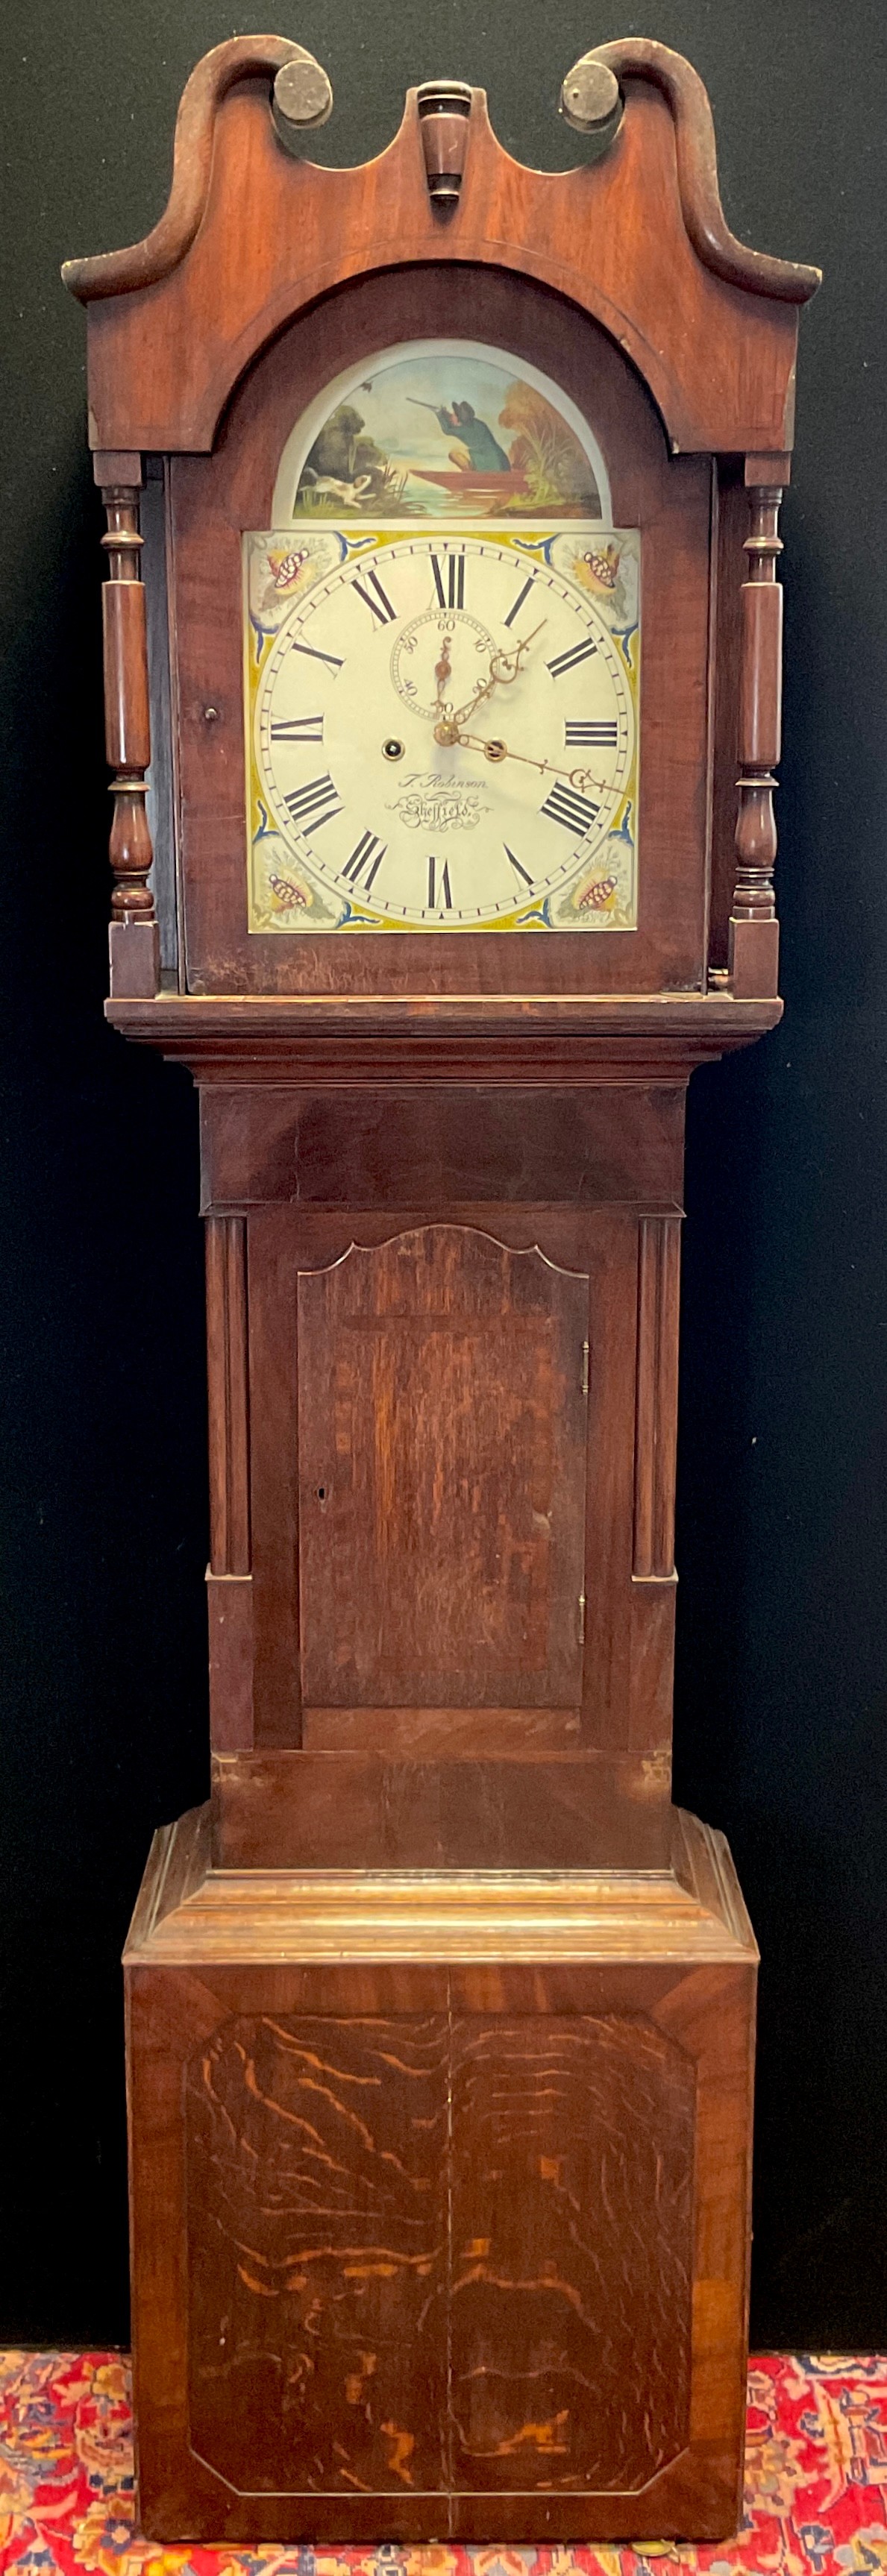 Early 19th century oak and mahogany Longcase clock by Thomas Robinson, of Sheffield, 8-day movement,